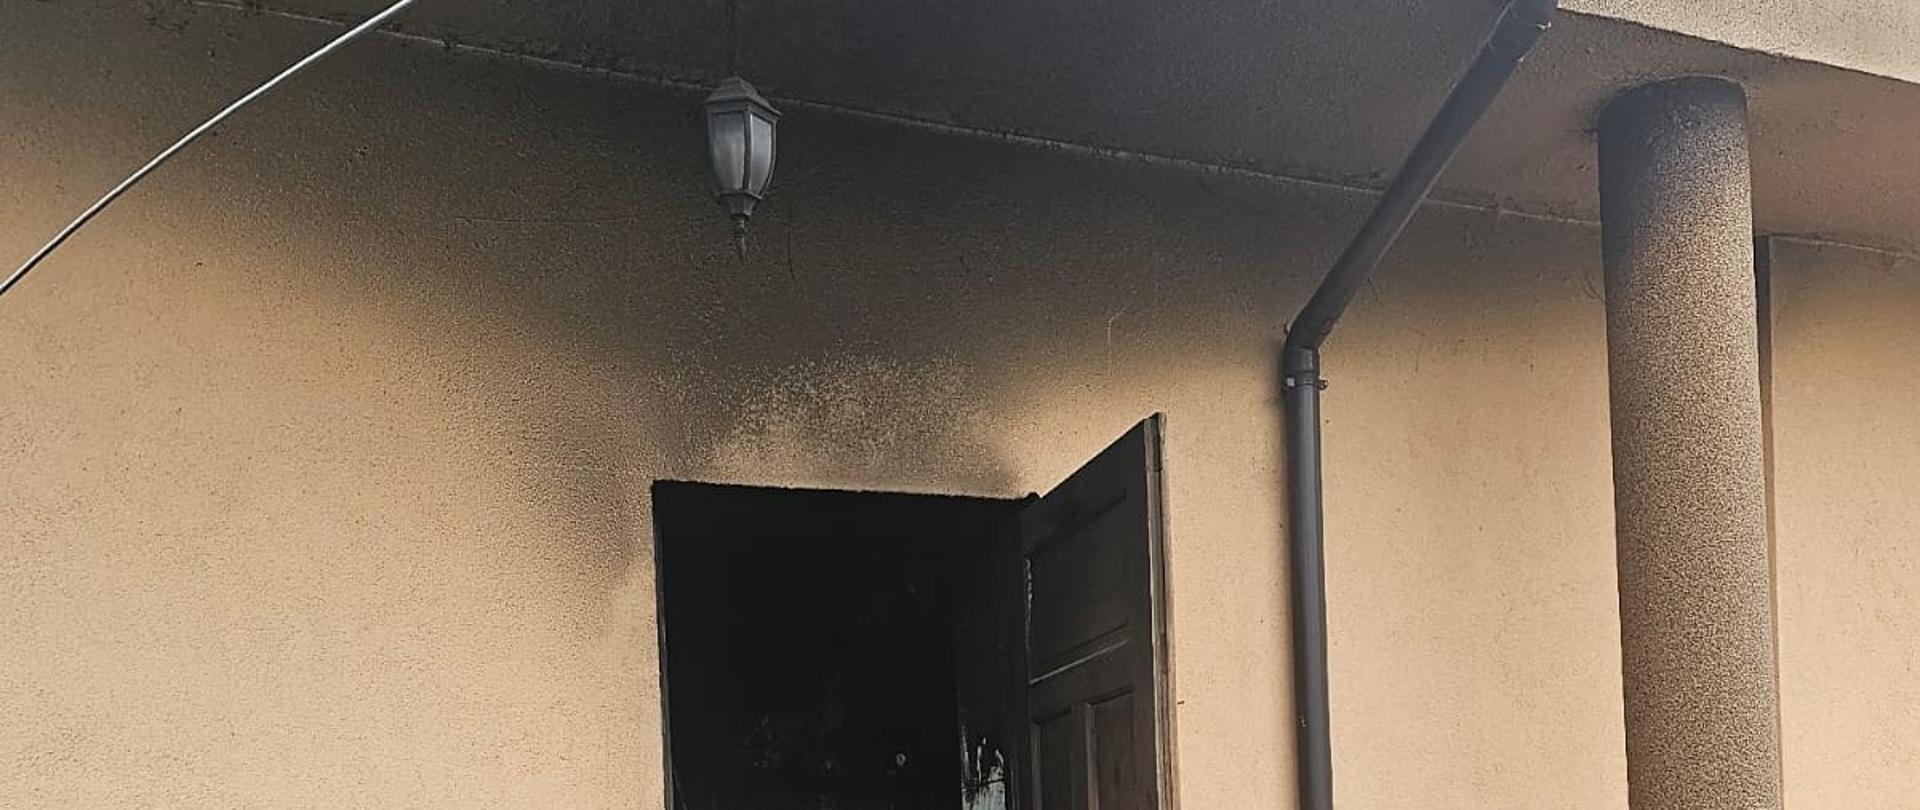 Zdjęcie przedstawia wejście techniczne do budynku od strony kotłowni gdzie wybuchł pożar. Widać okopcenia elewacji.